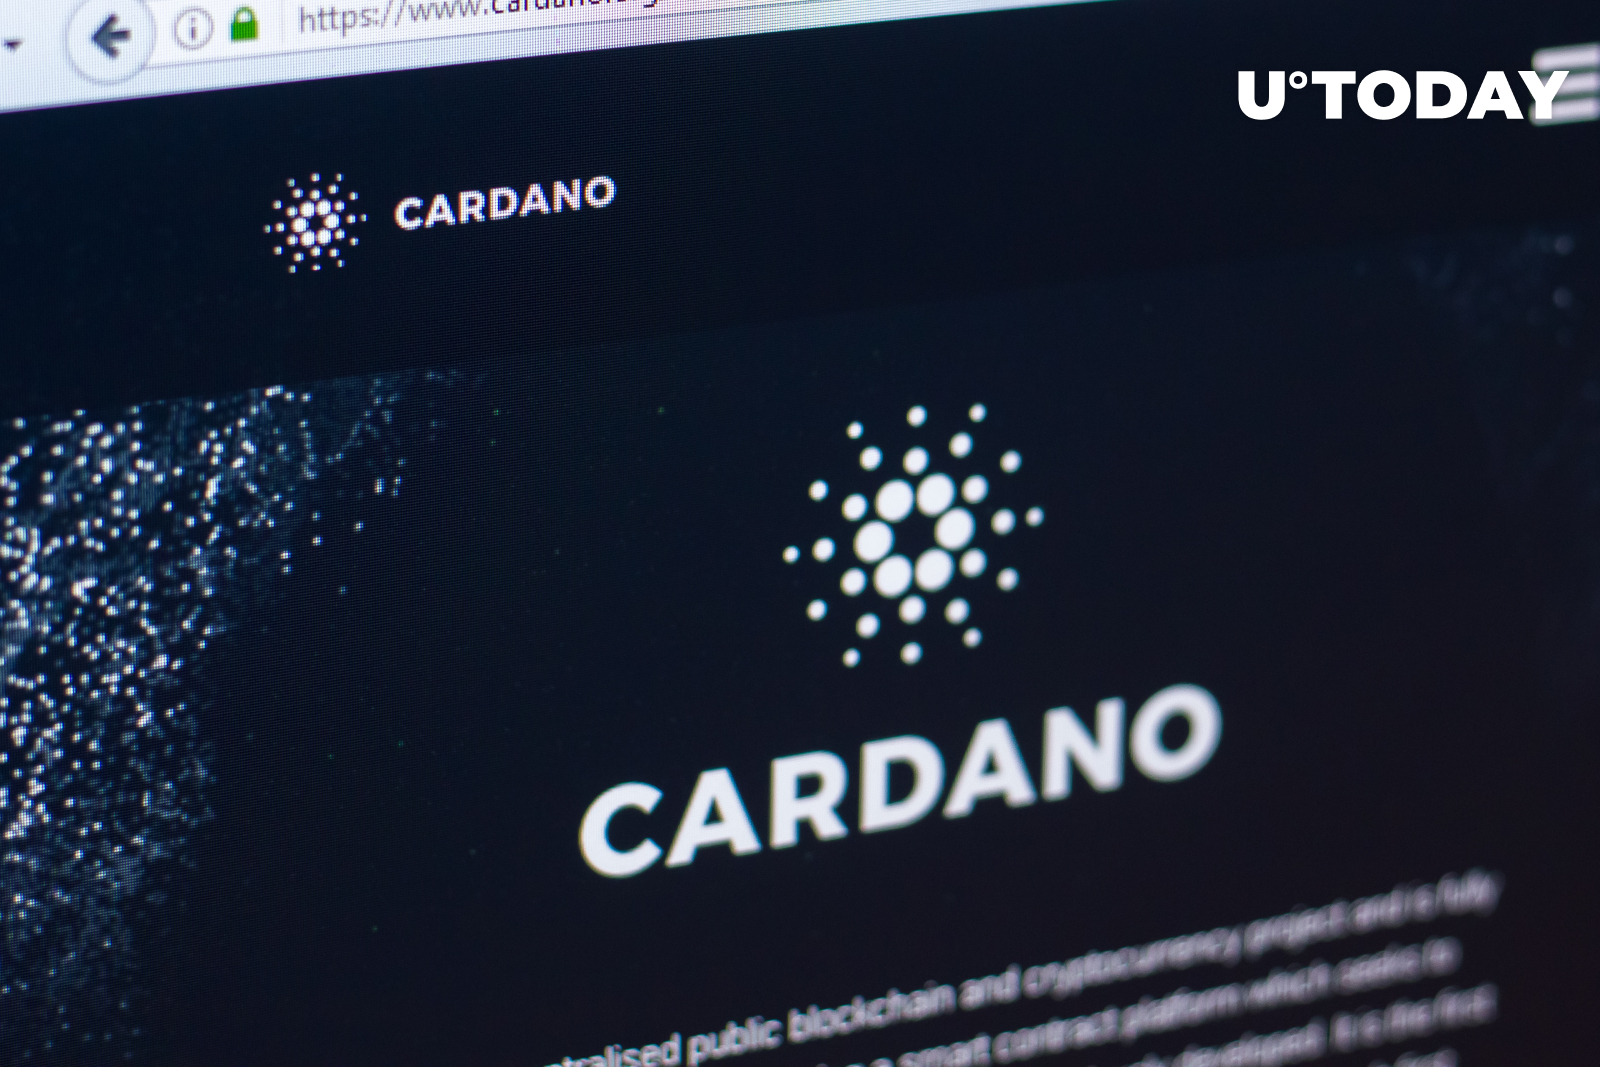 Cardano Coming to World’s Biggest DApp Store